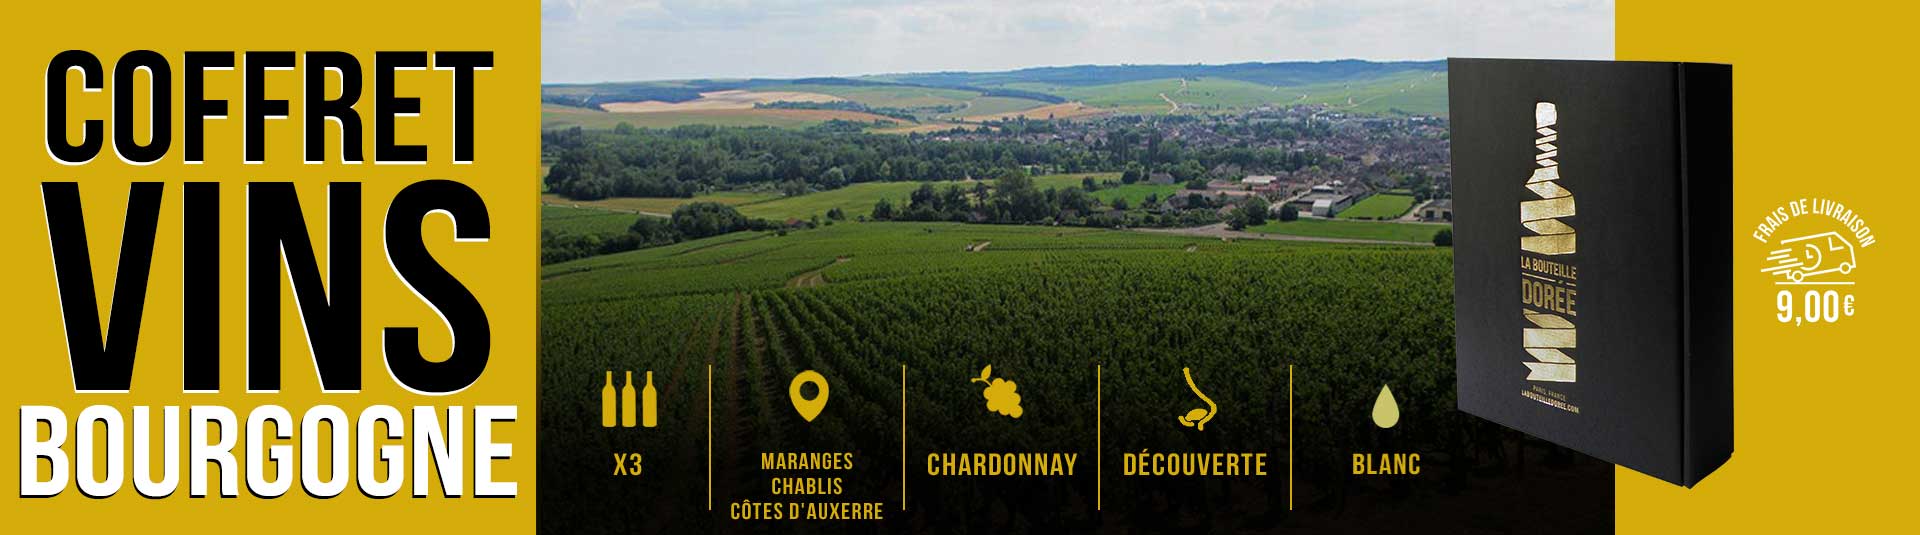 Coffret vin blanc Bourgogne Chardonnay Découverte